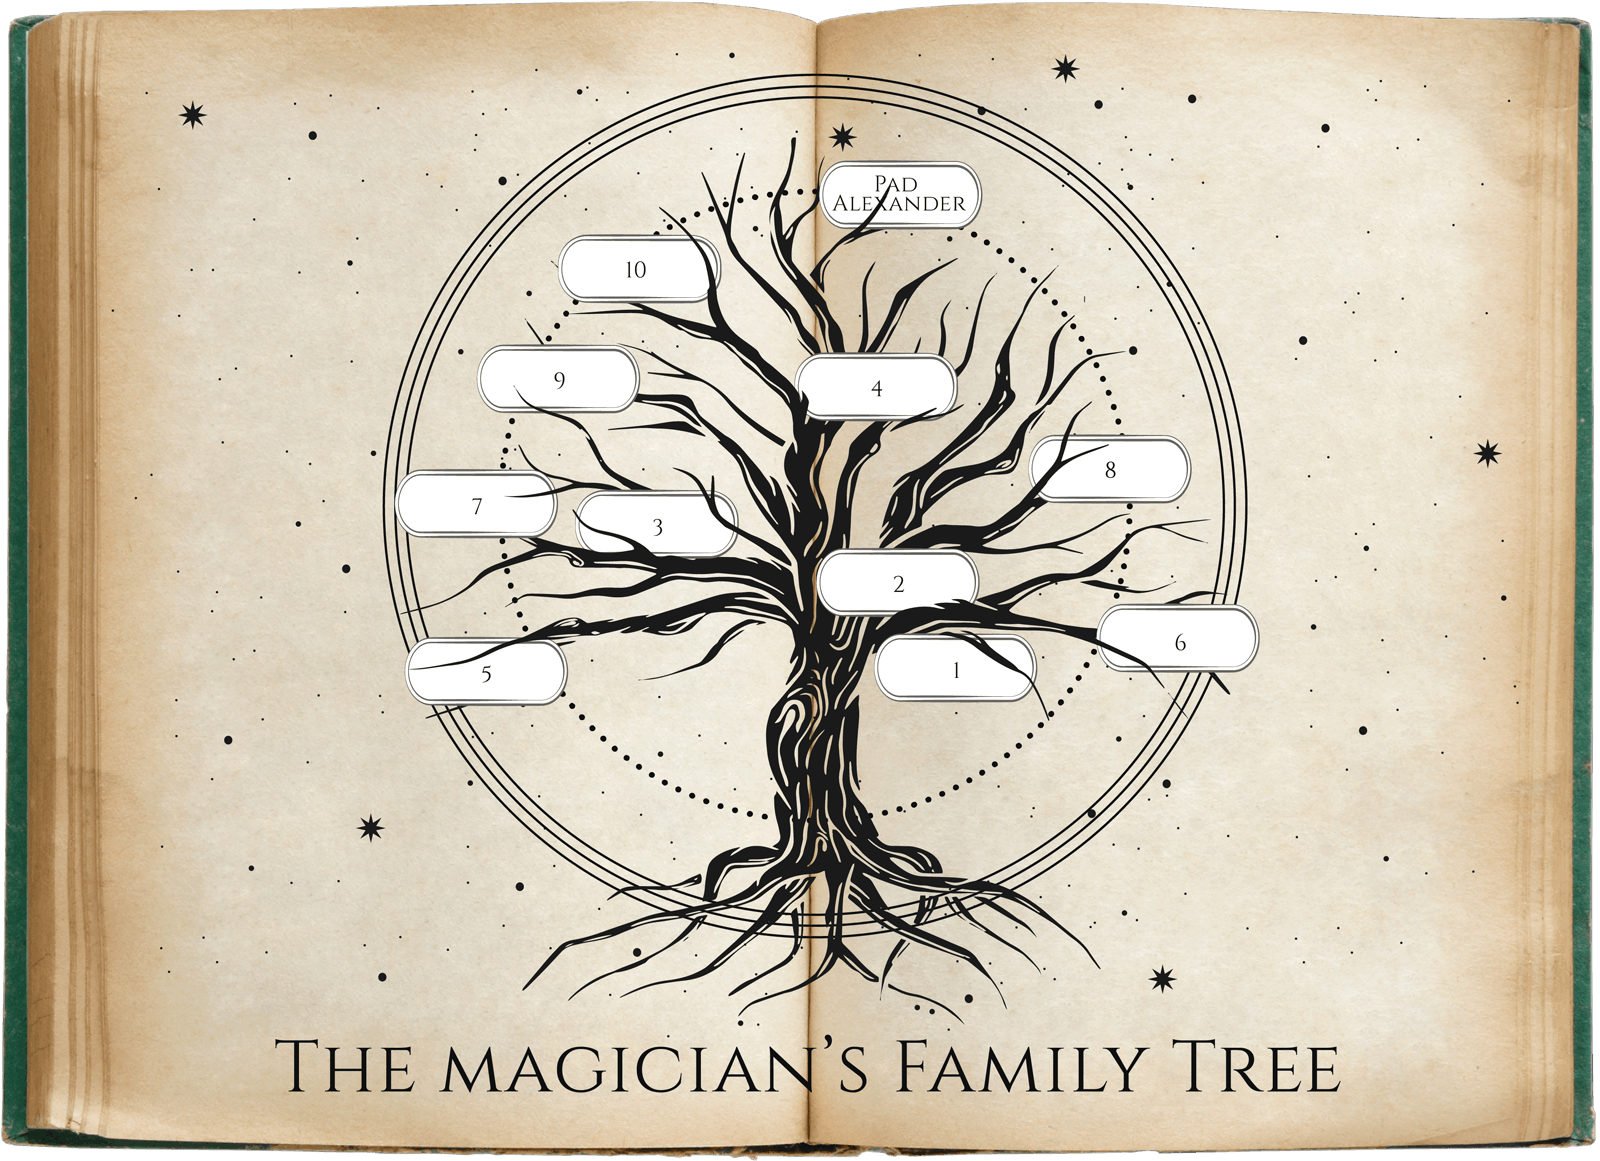 The Magician's Family Tree